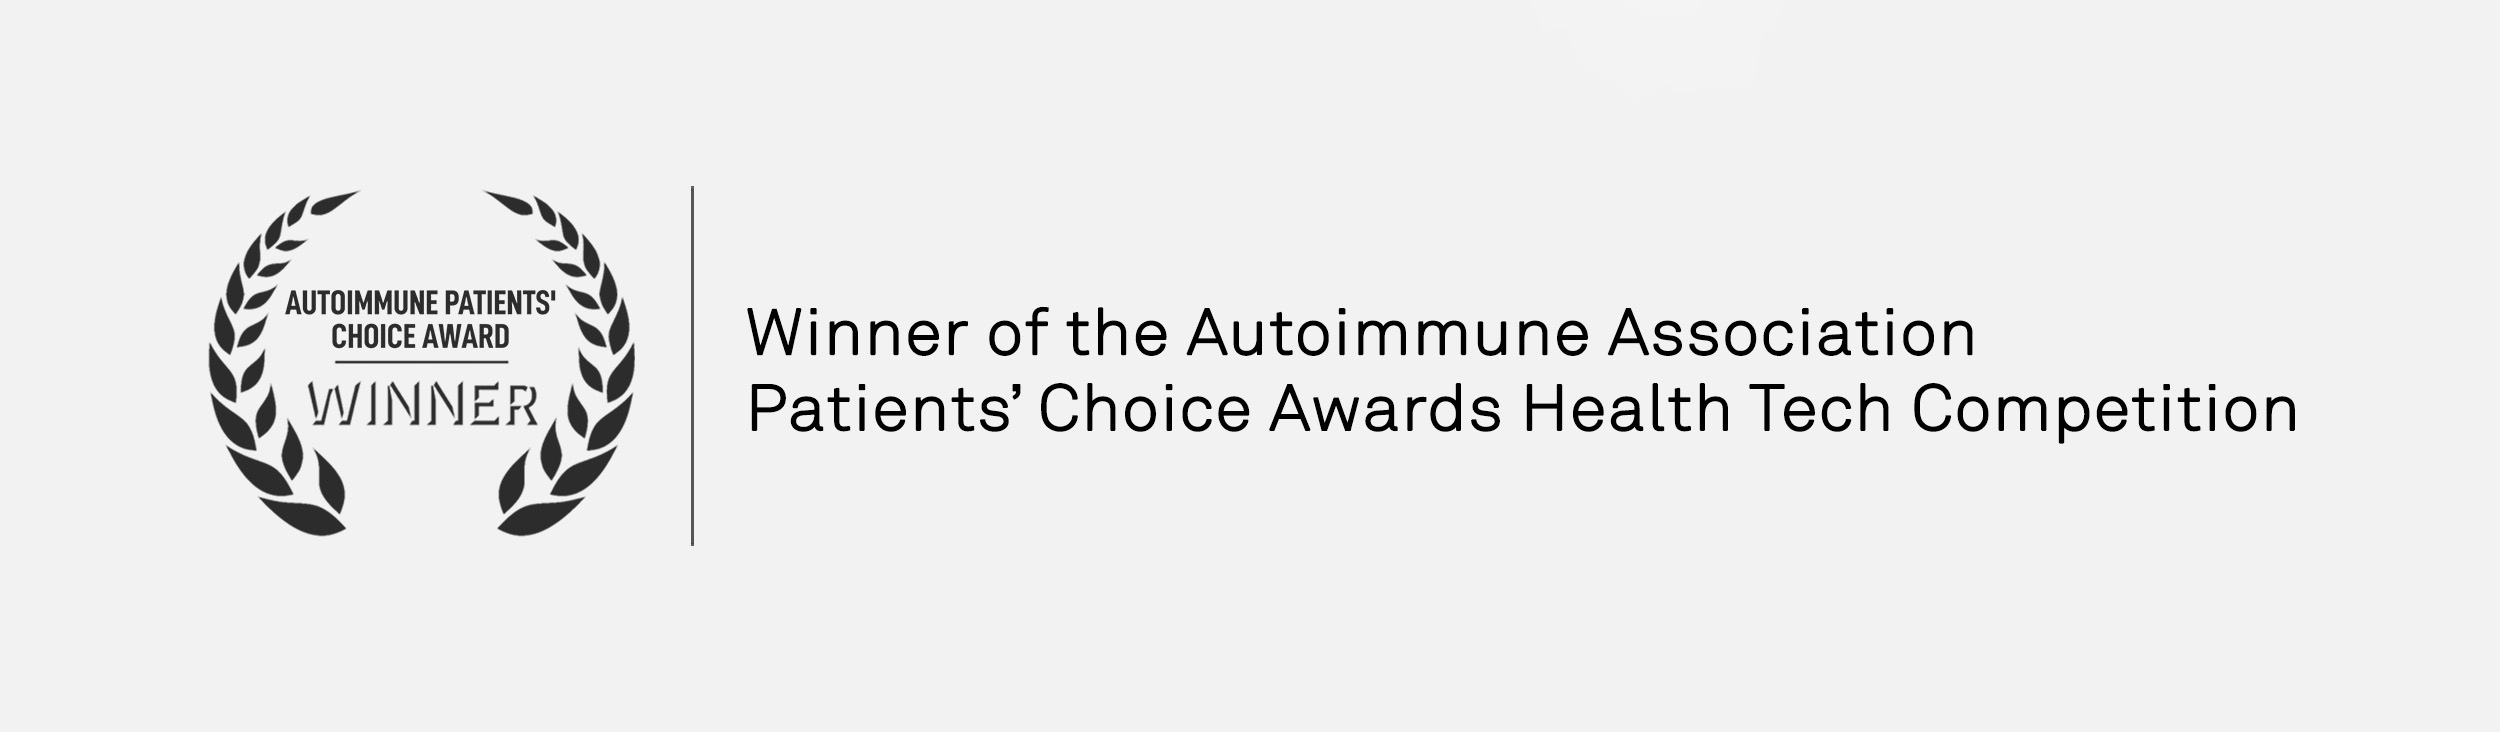 Autoimmune Association Patient's Award